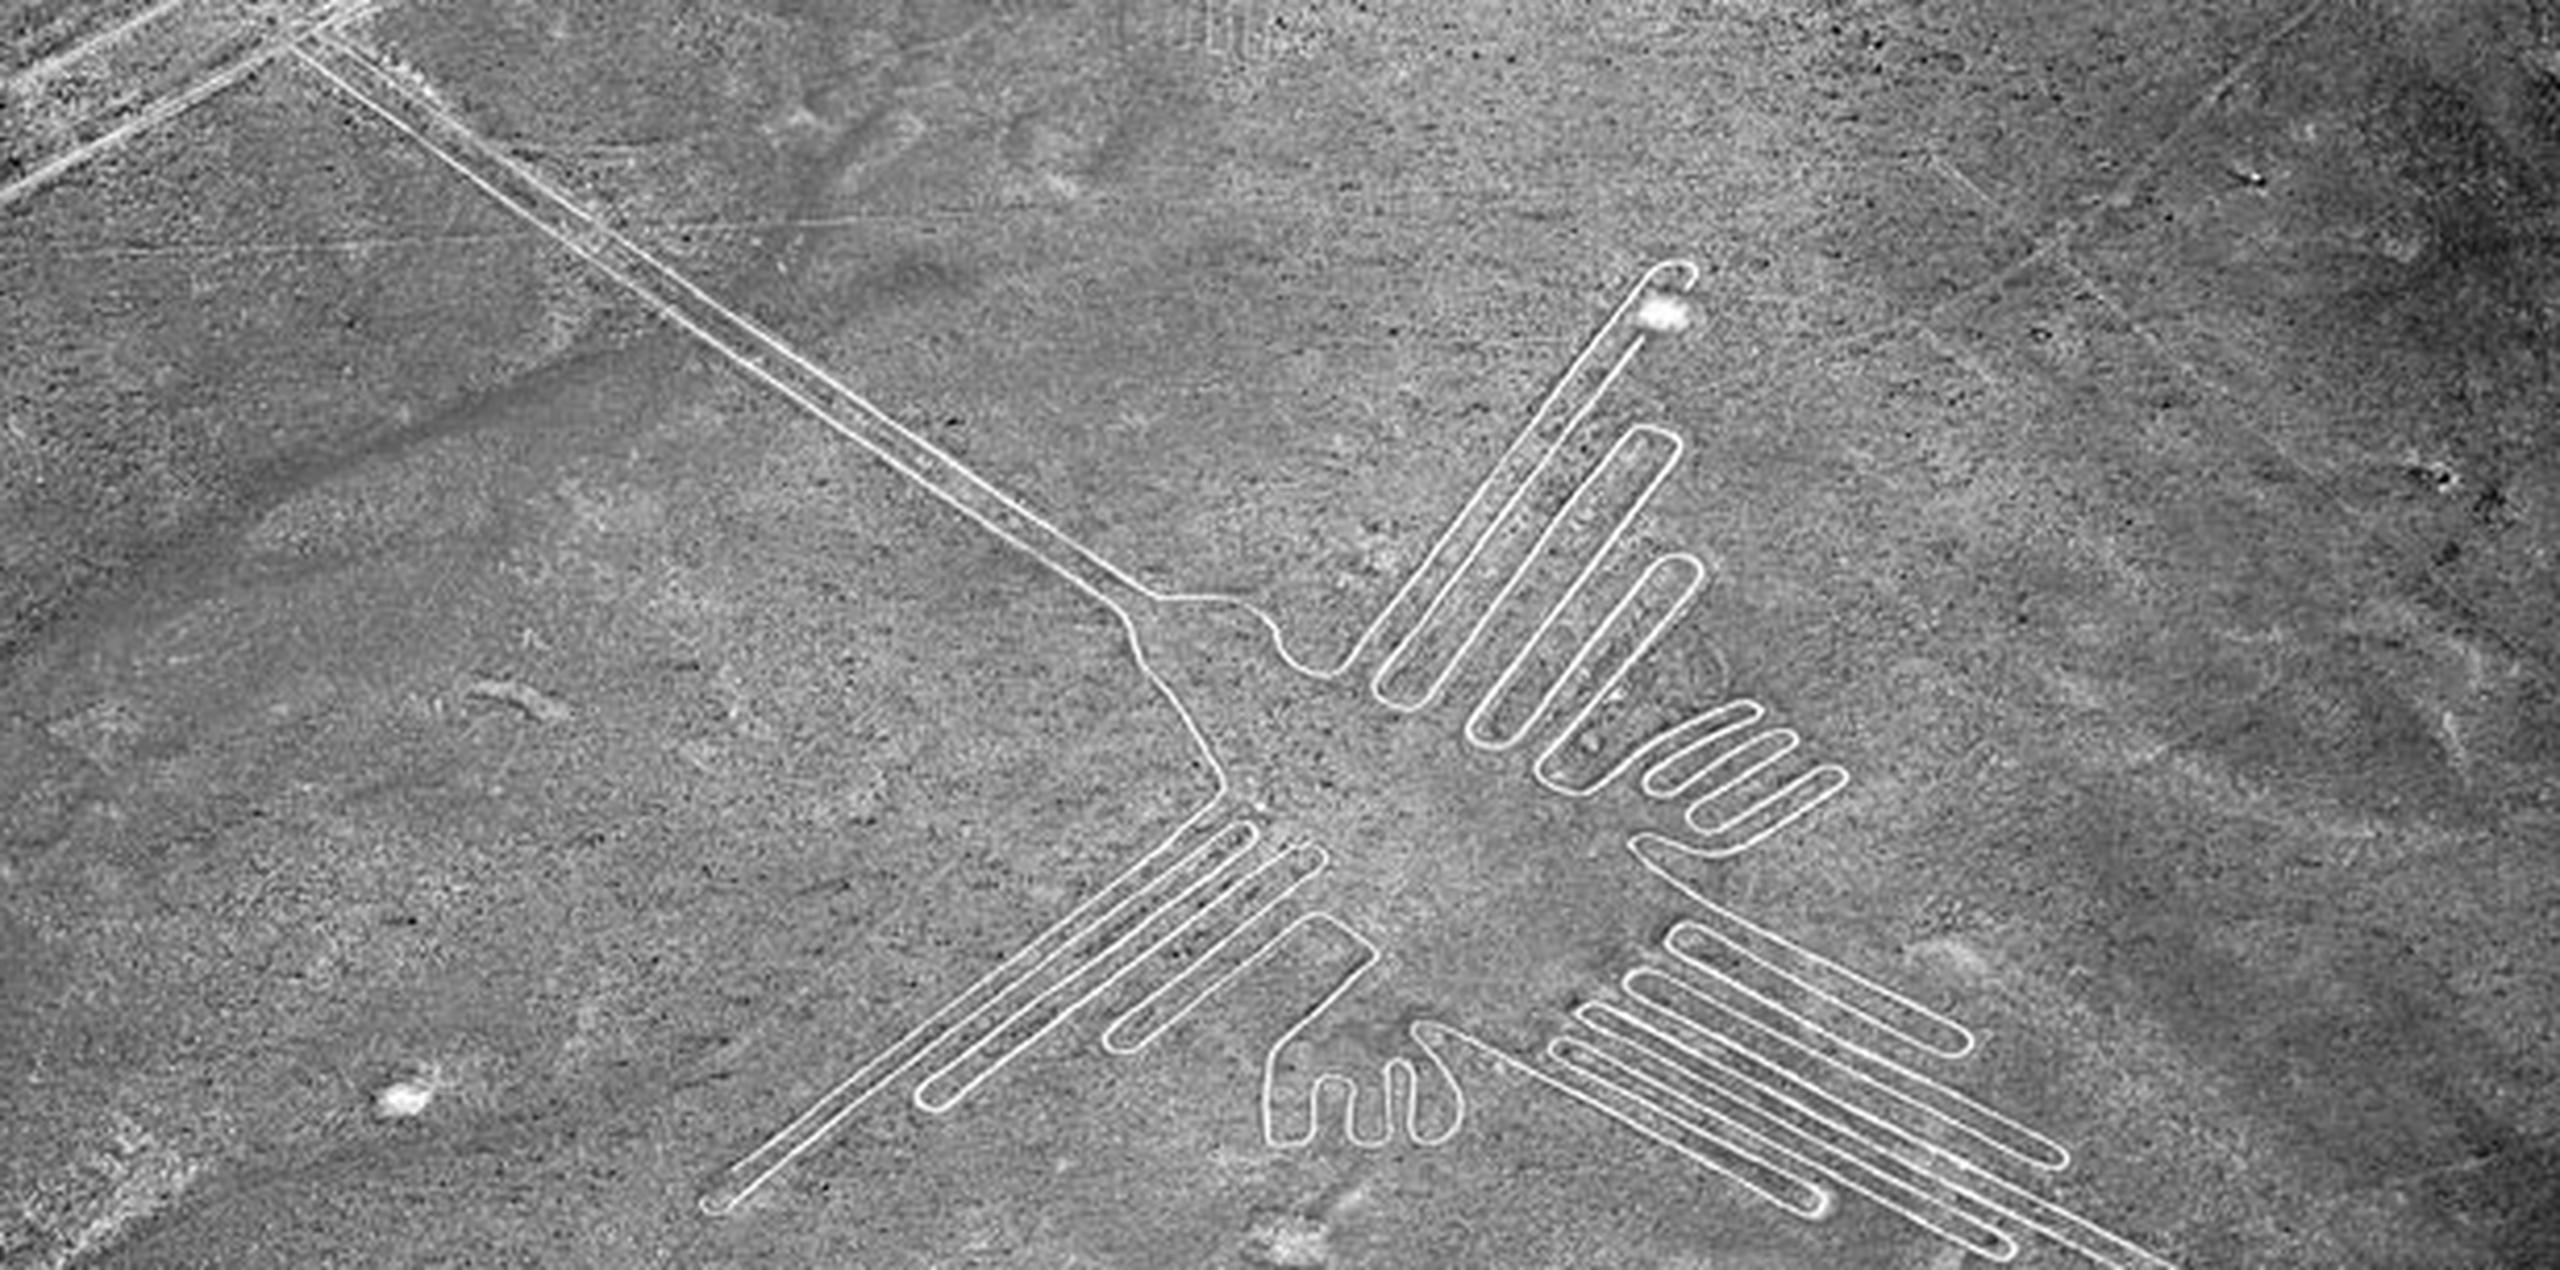 Los geoglifos de Palpa, descubiertos en 1926, fueron realizados por la cultura Paracas y preceden a las figuras de Nazca, descubiertas en 1927 y más famosas por tener mayor complejidad y ser el legado más importante de la cultura Nazca. (Archivo)